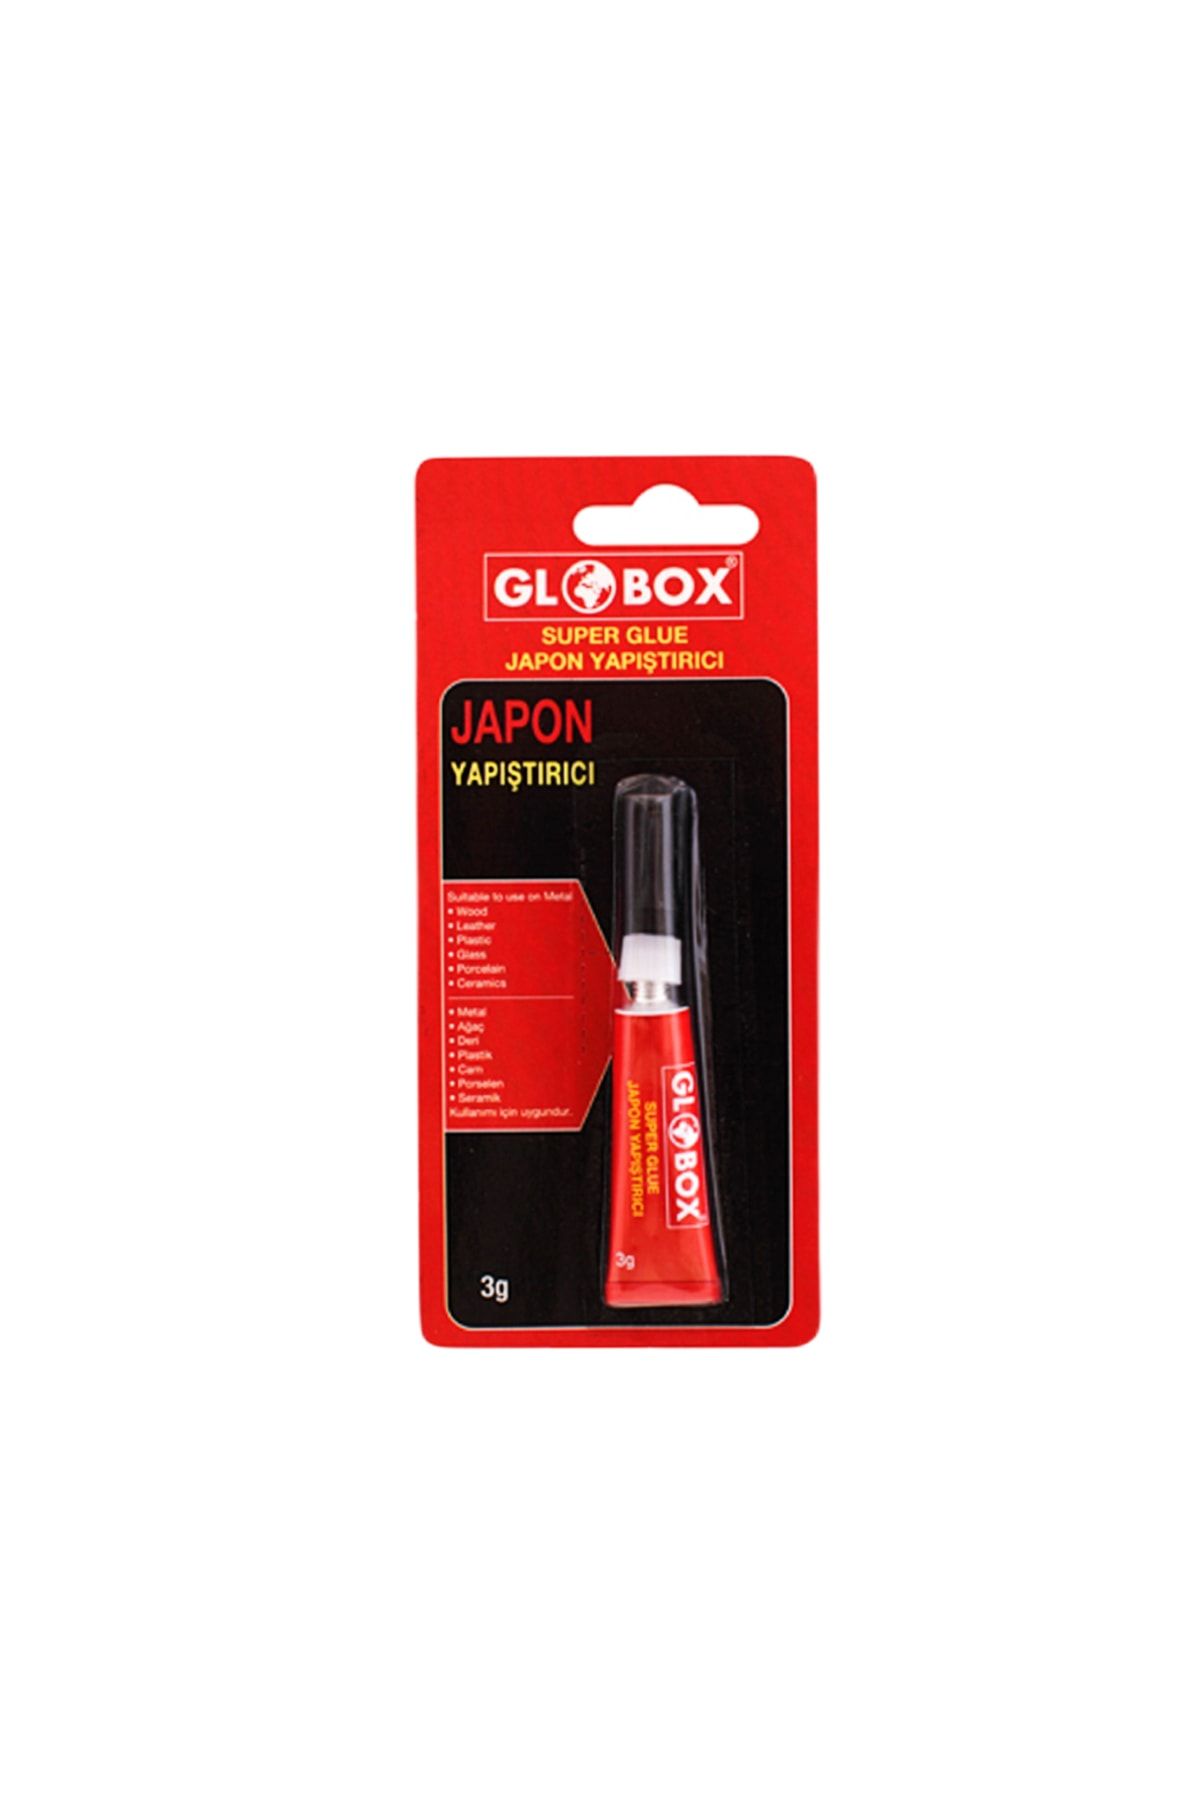 Globox Japon Yapıştırıcı